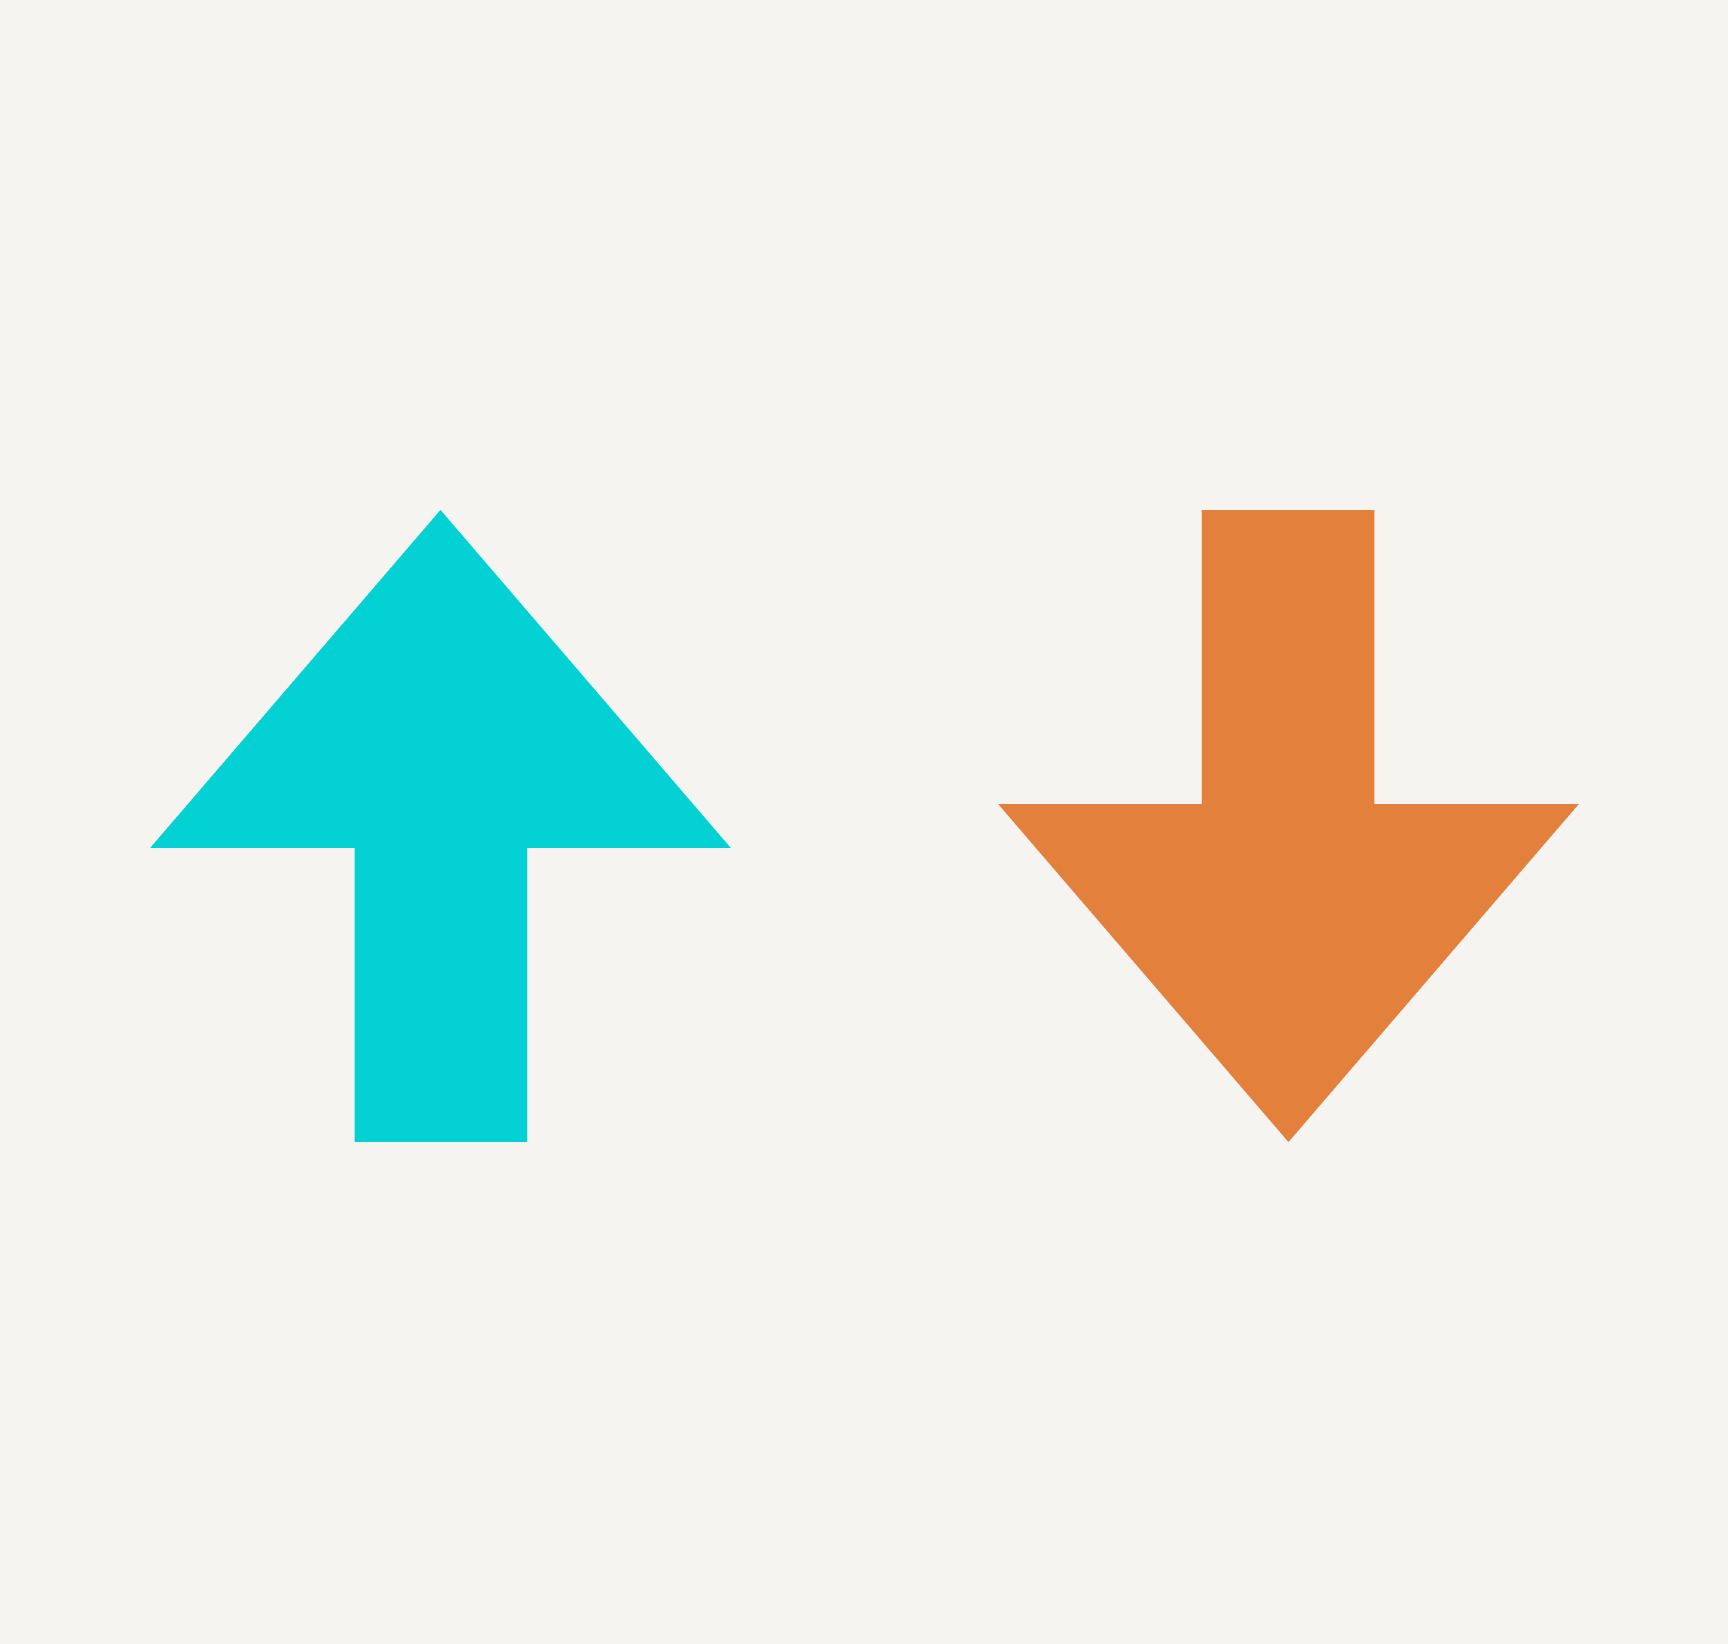 Blue upward arrow next to orange downward arrow